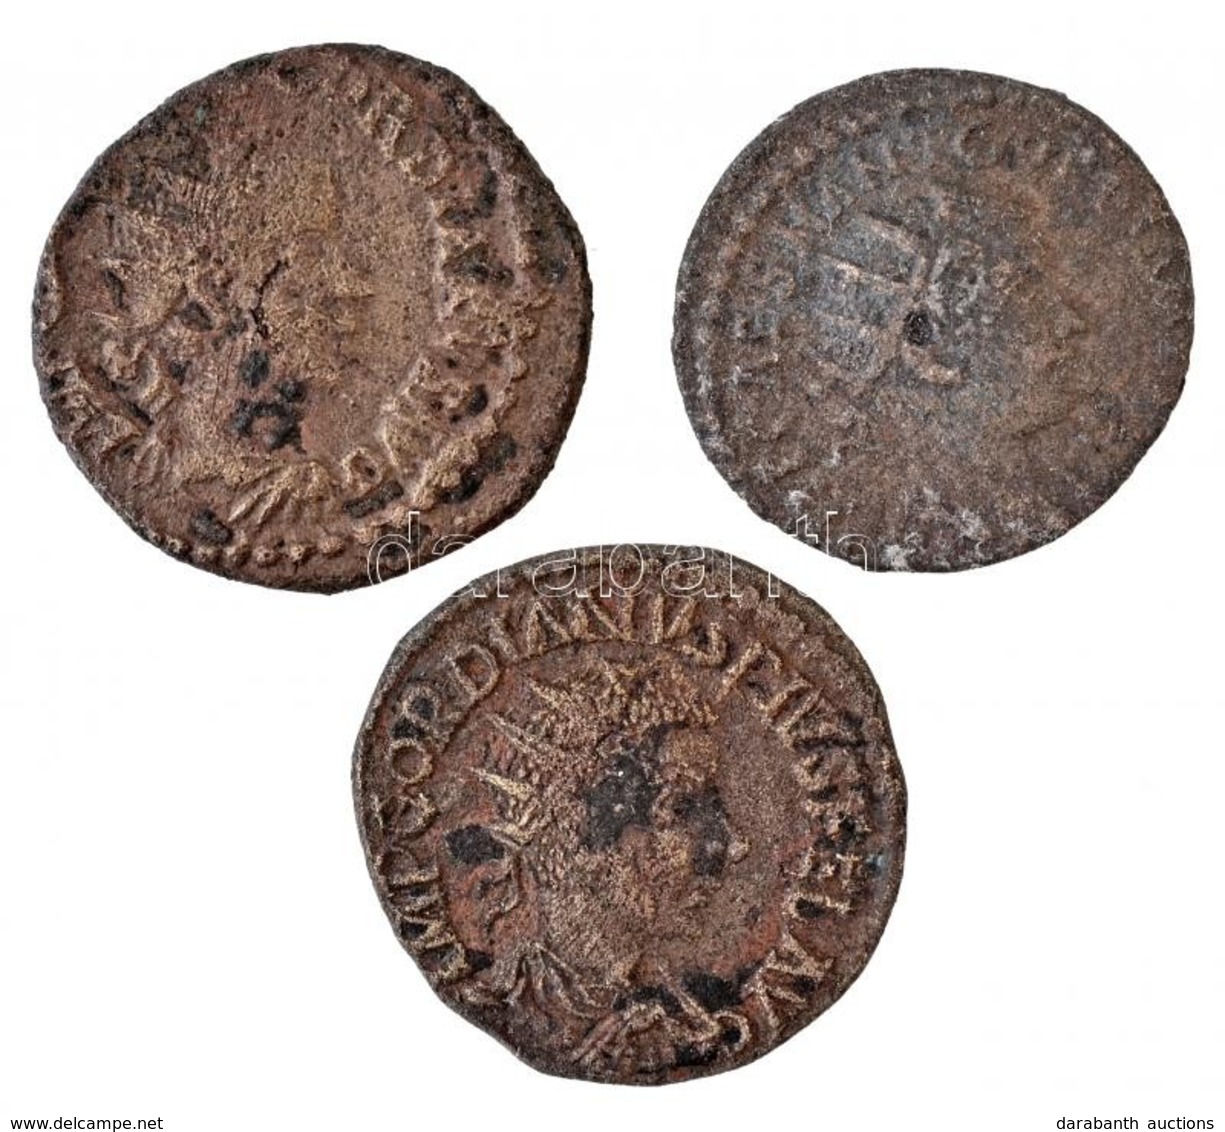 3db-os Tisztítatlan Római Rézpénz Tétel A Kr. U. III. Századból T:3
3pcs Of Uncleaned Roman Copper Coins From The 3rd Ce - Non Classificati